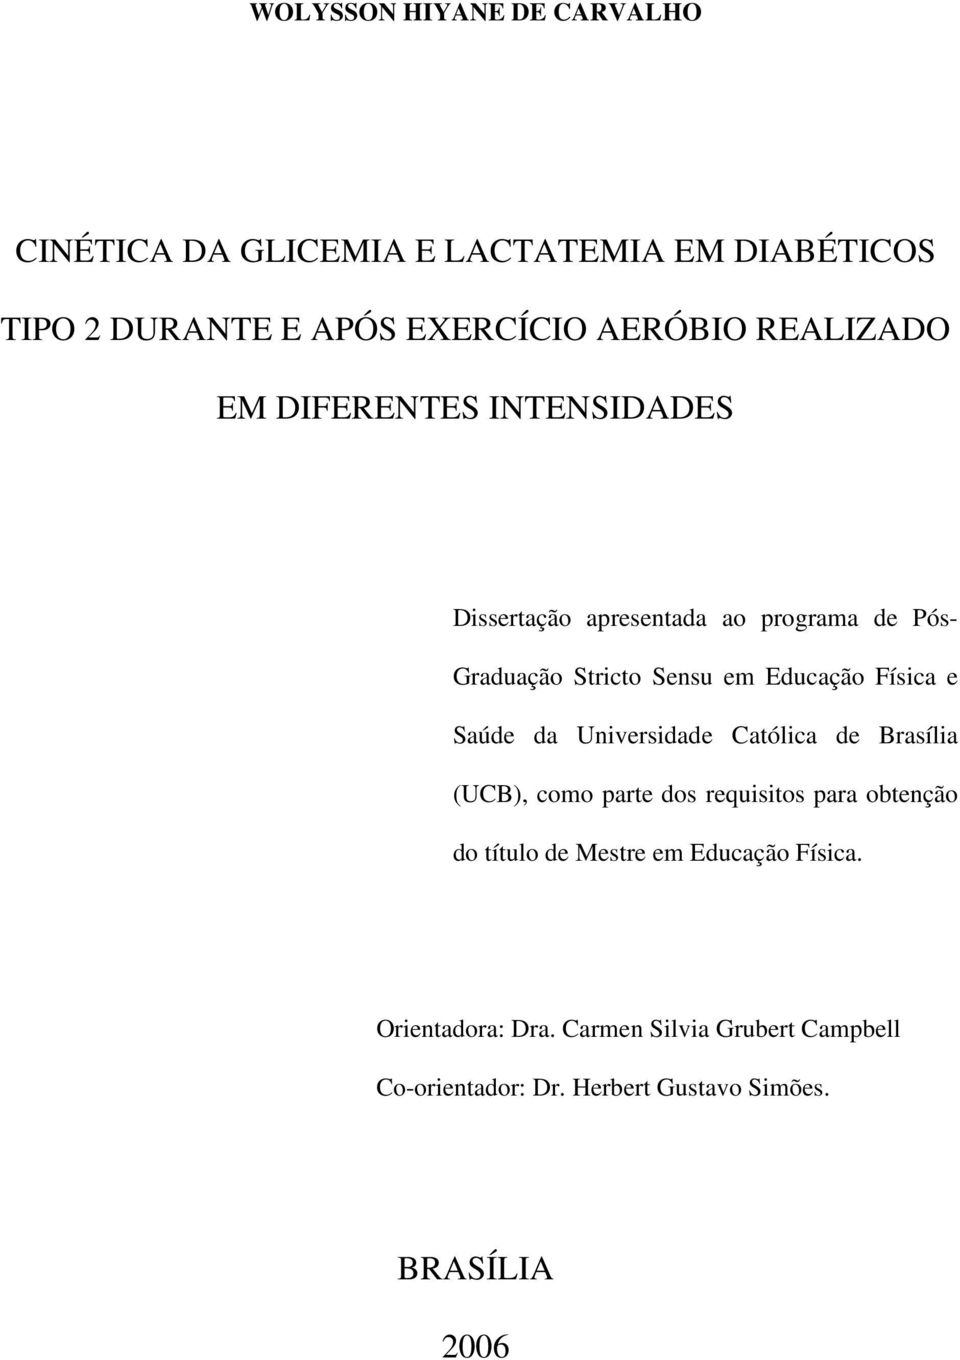 Física e Saúde da Universidade Católica de Brasília (UCB), como parte dos requisitos para obtenção do título de Mestre